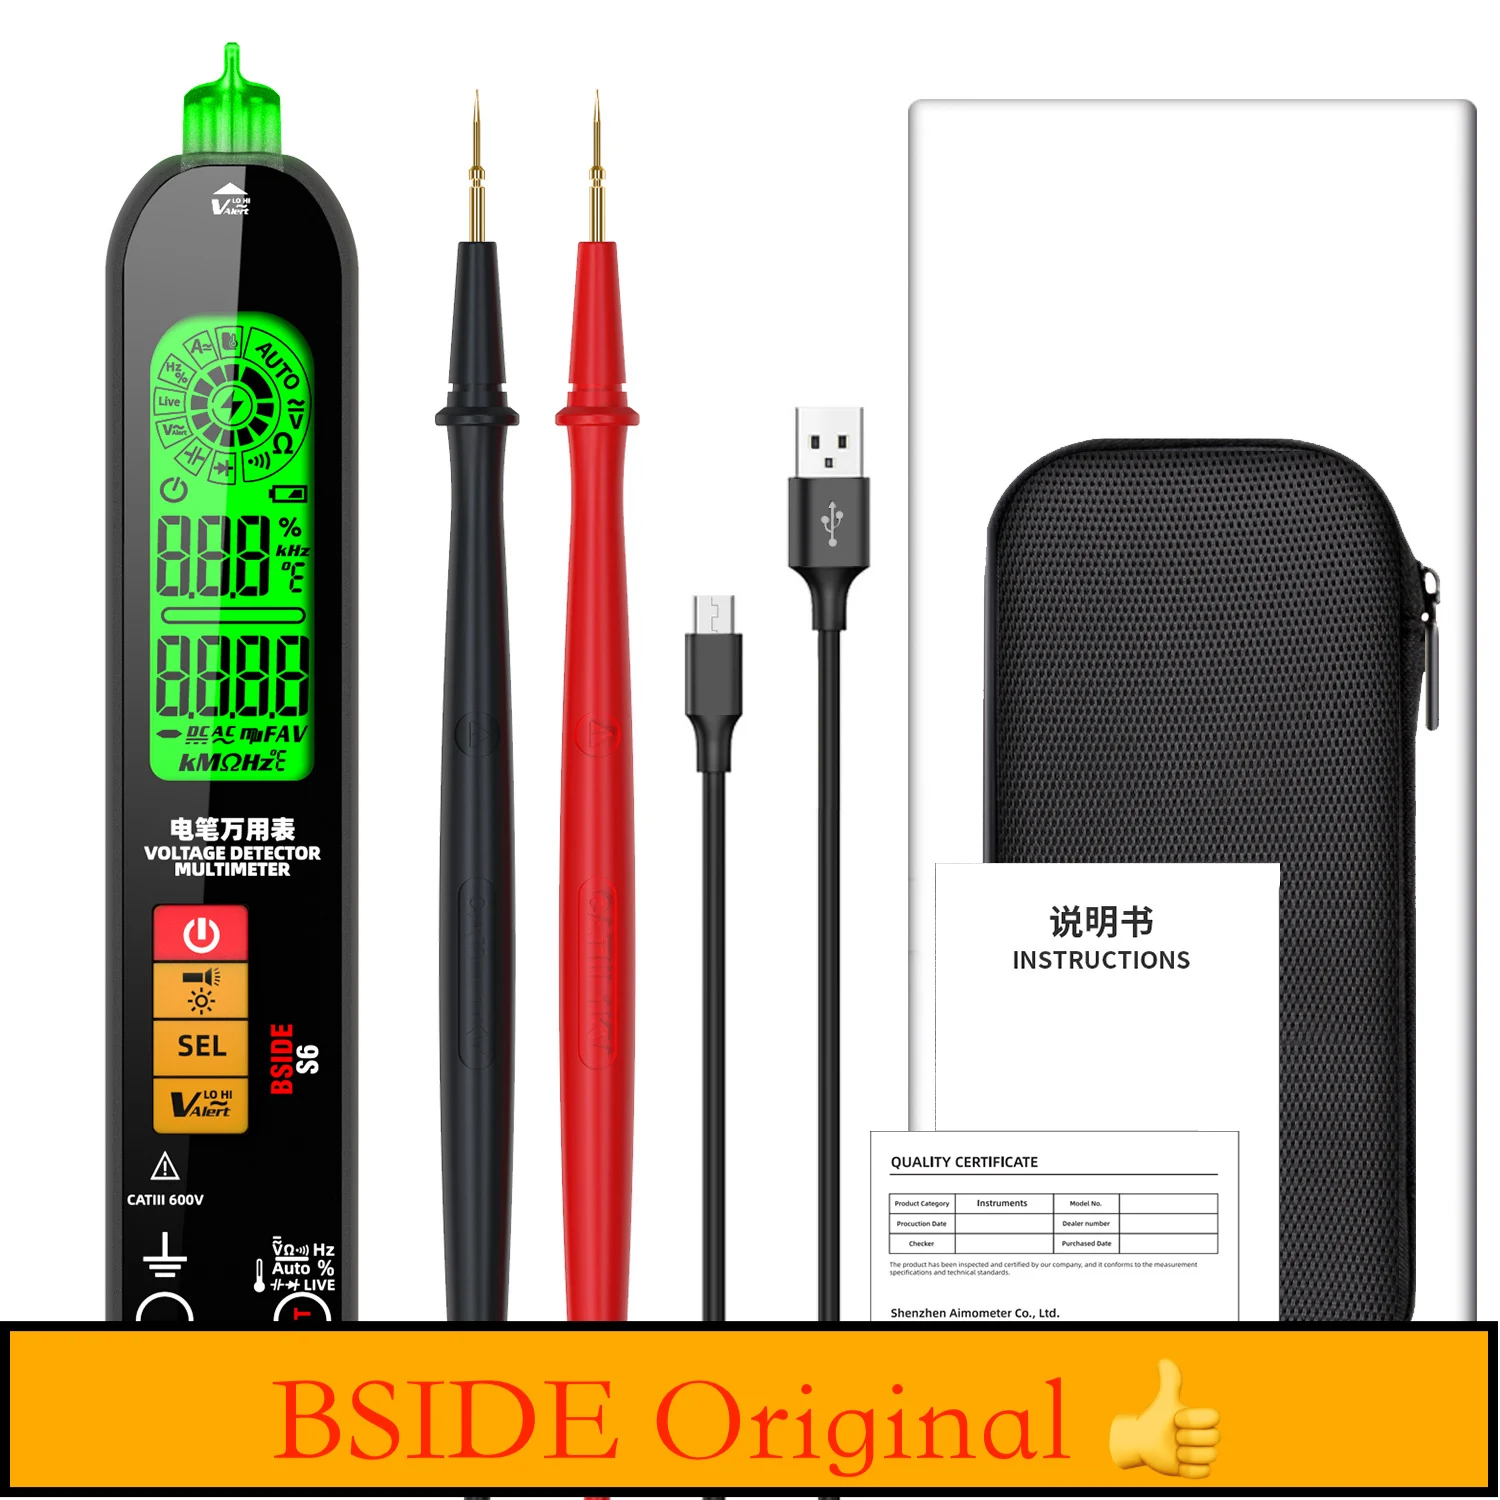 

Цифровой мультиметр BSIDE S6 с автоматическим выбором диапазона, тестер напряжения постоянного и переменного тока, ручка, Бесконтактный детектор напряжения, реальная яркость